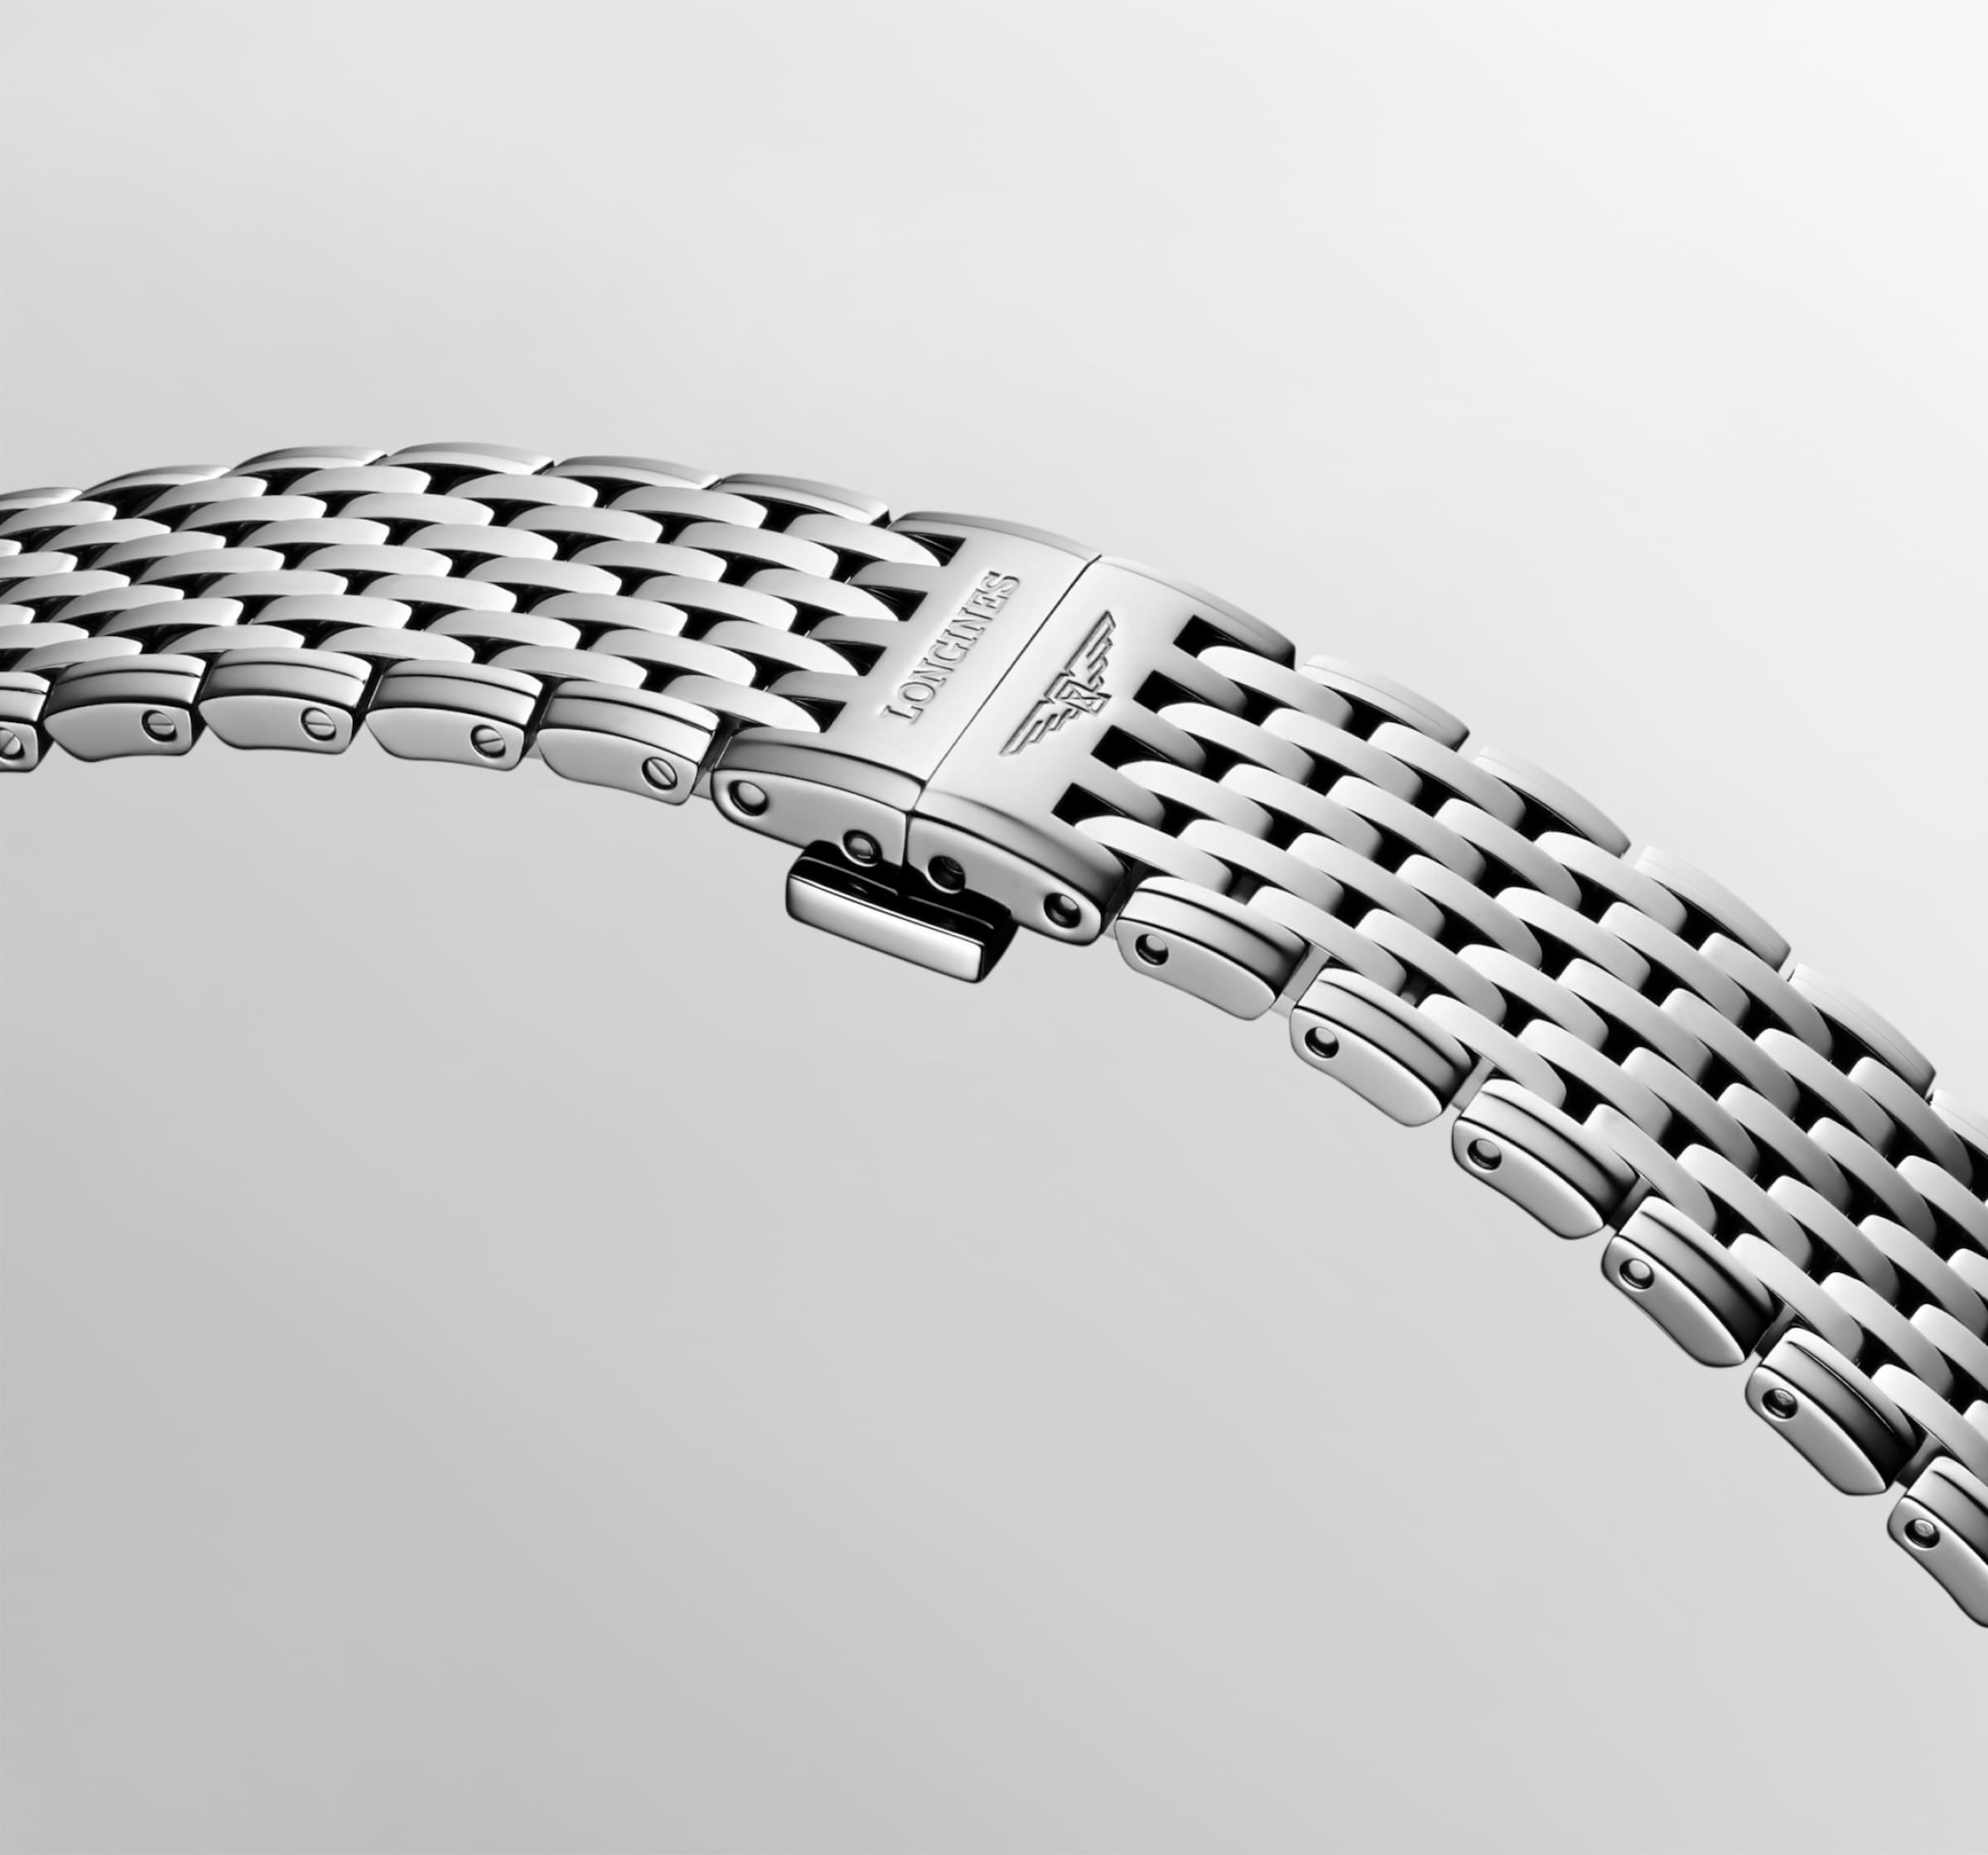 Longines LA GRANDE CLASSIQUE DE LONGINES Quartz Stainless steel Watch - L4.512.4.87.6